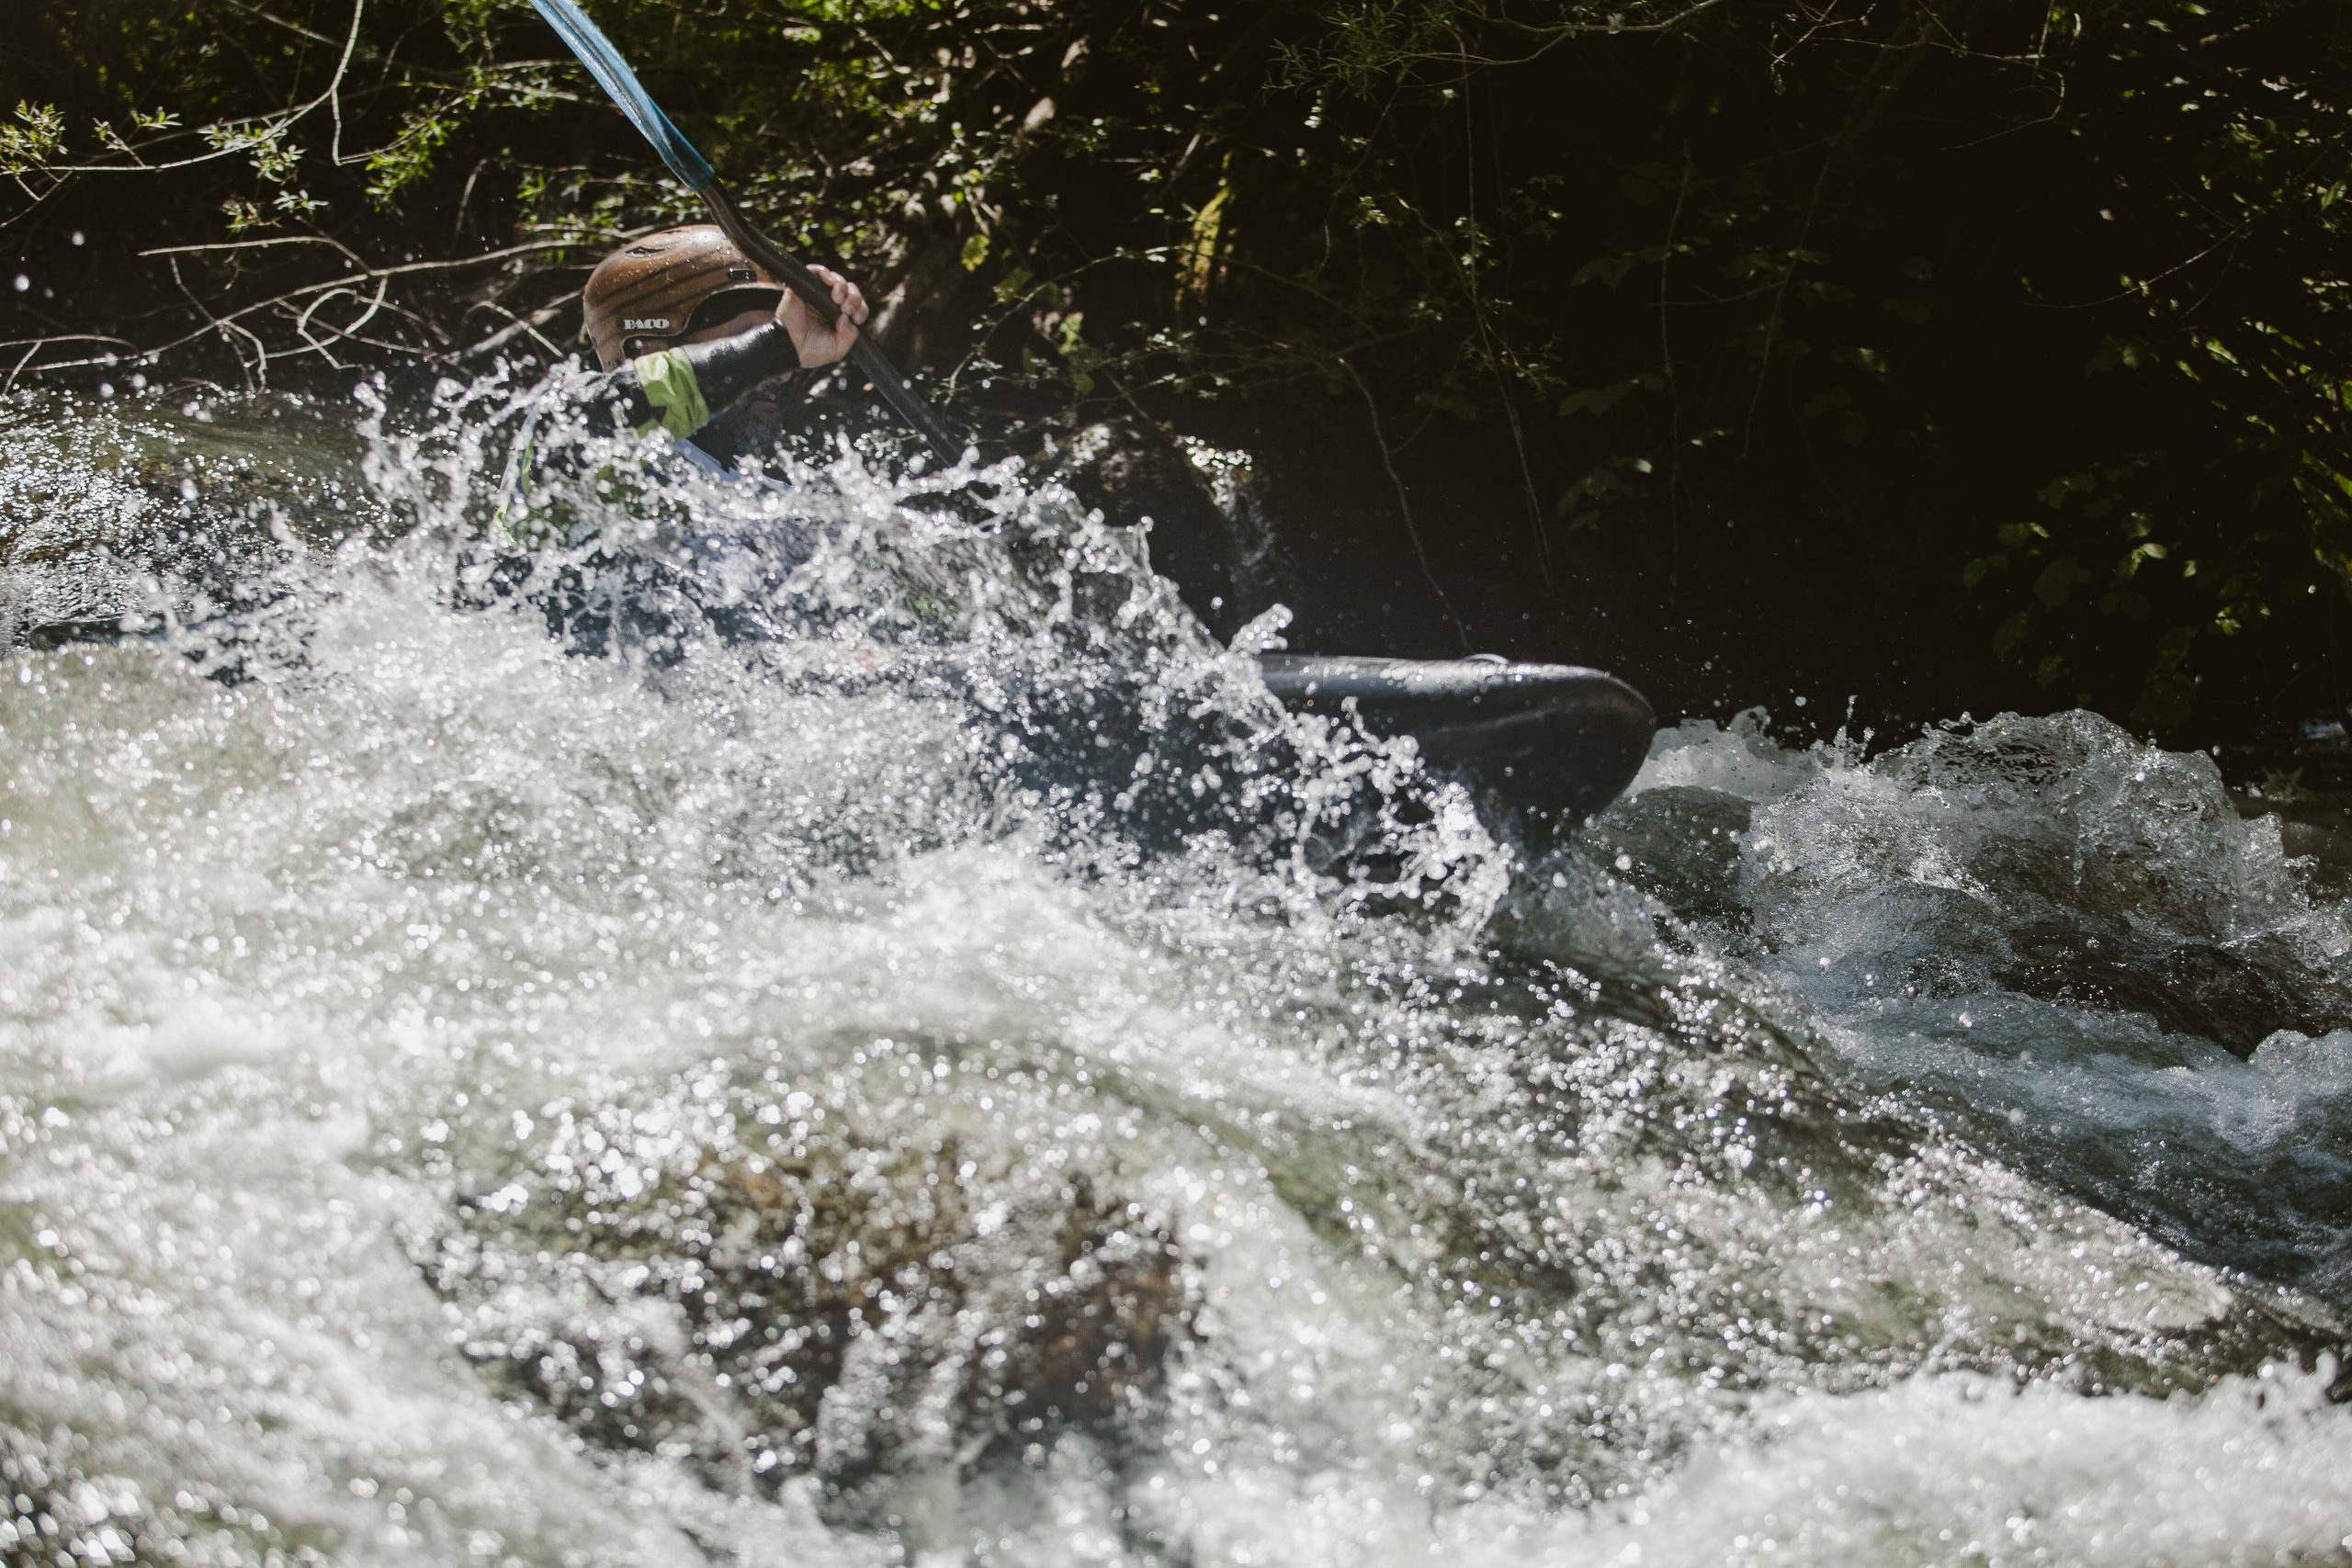 Kilometro lanzado. Río Piqueras. Descenso en piragua. XX competición de Kayak extremo. 24 de julio de 2022.
© Juan San Sebastián. Todos los derechos reservados.